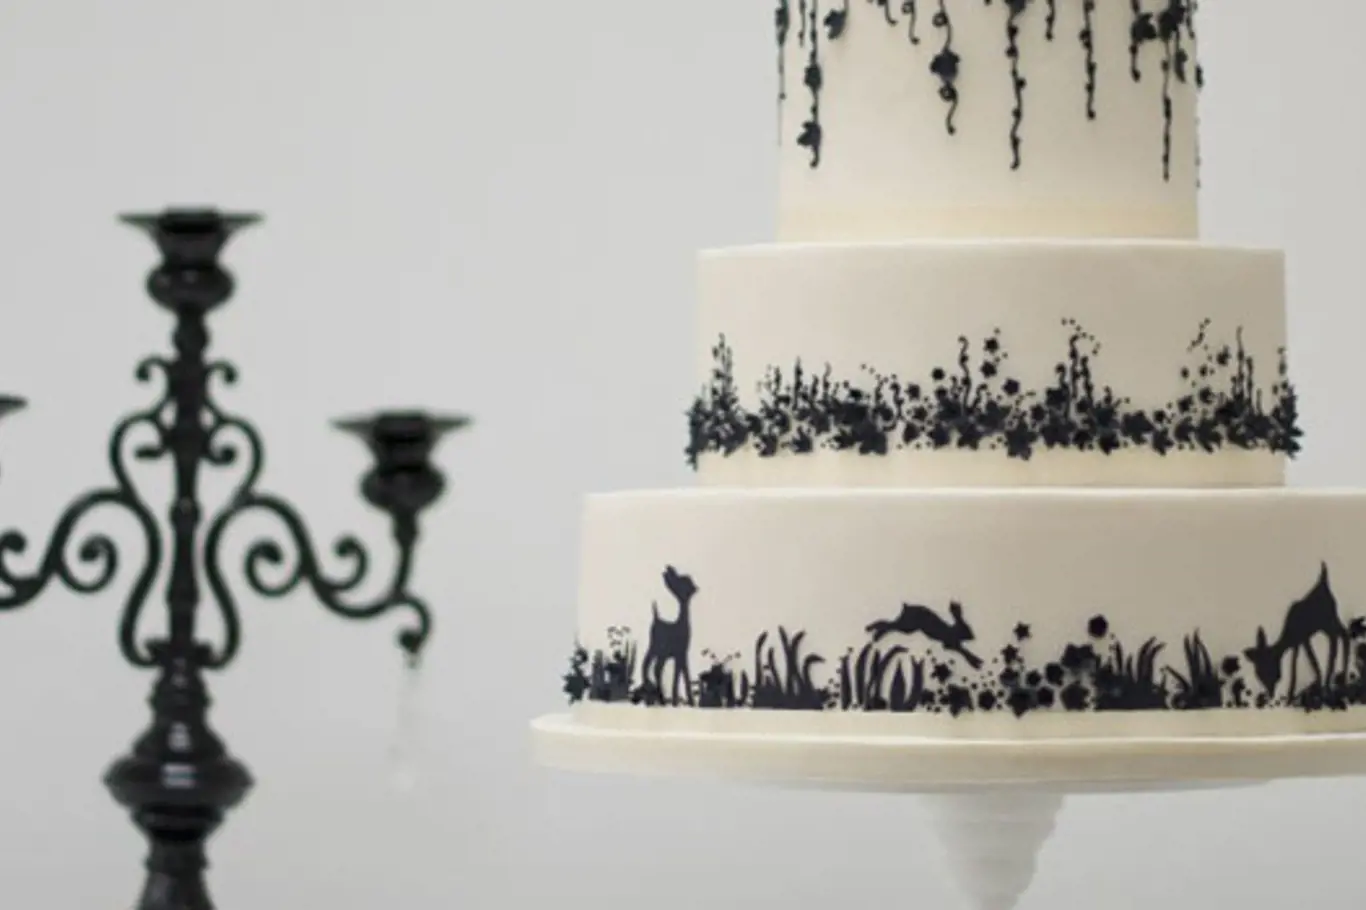 Už jste viděli 120ti patrový svatební dort?